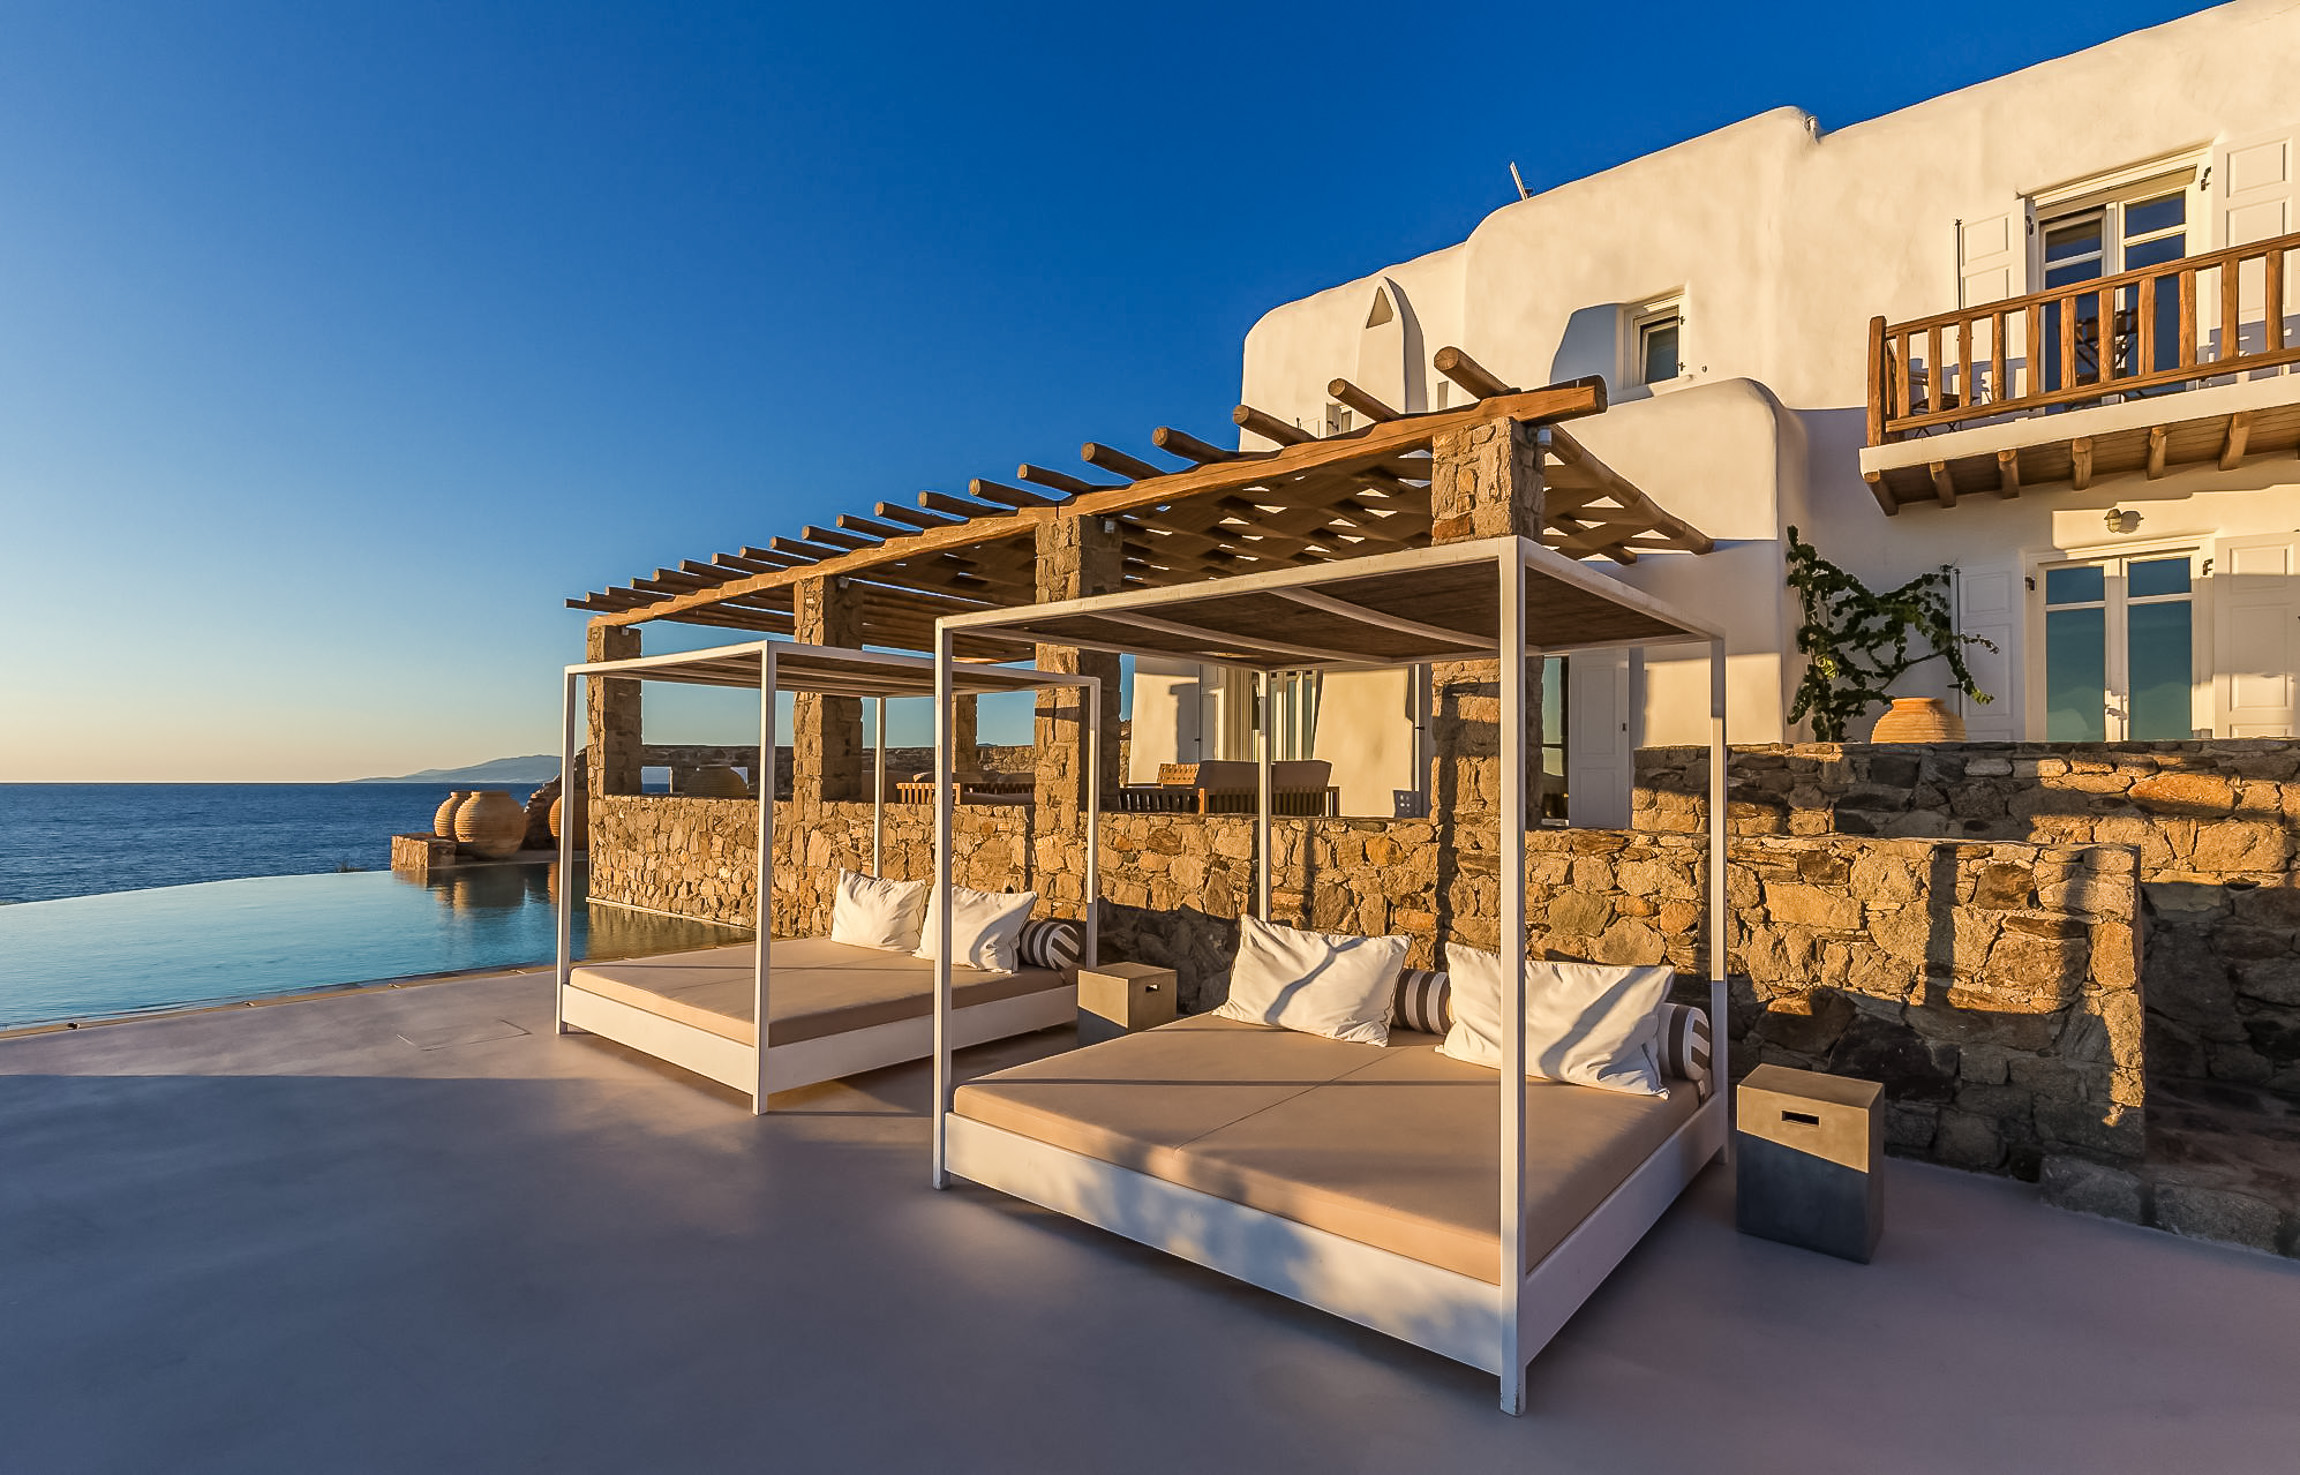 Alisahnea - Villas for Rent in Agios Ioannis, Mykonos, Greece